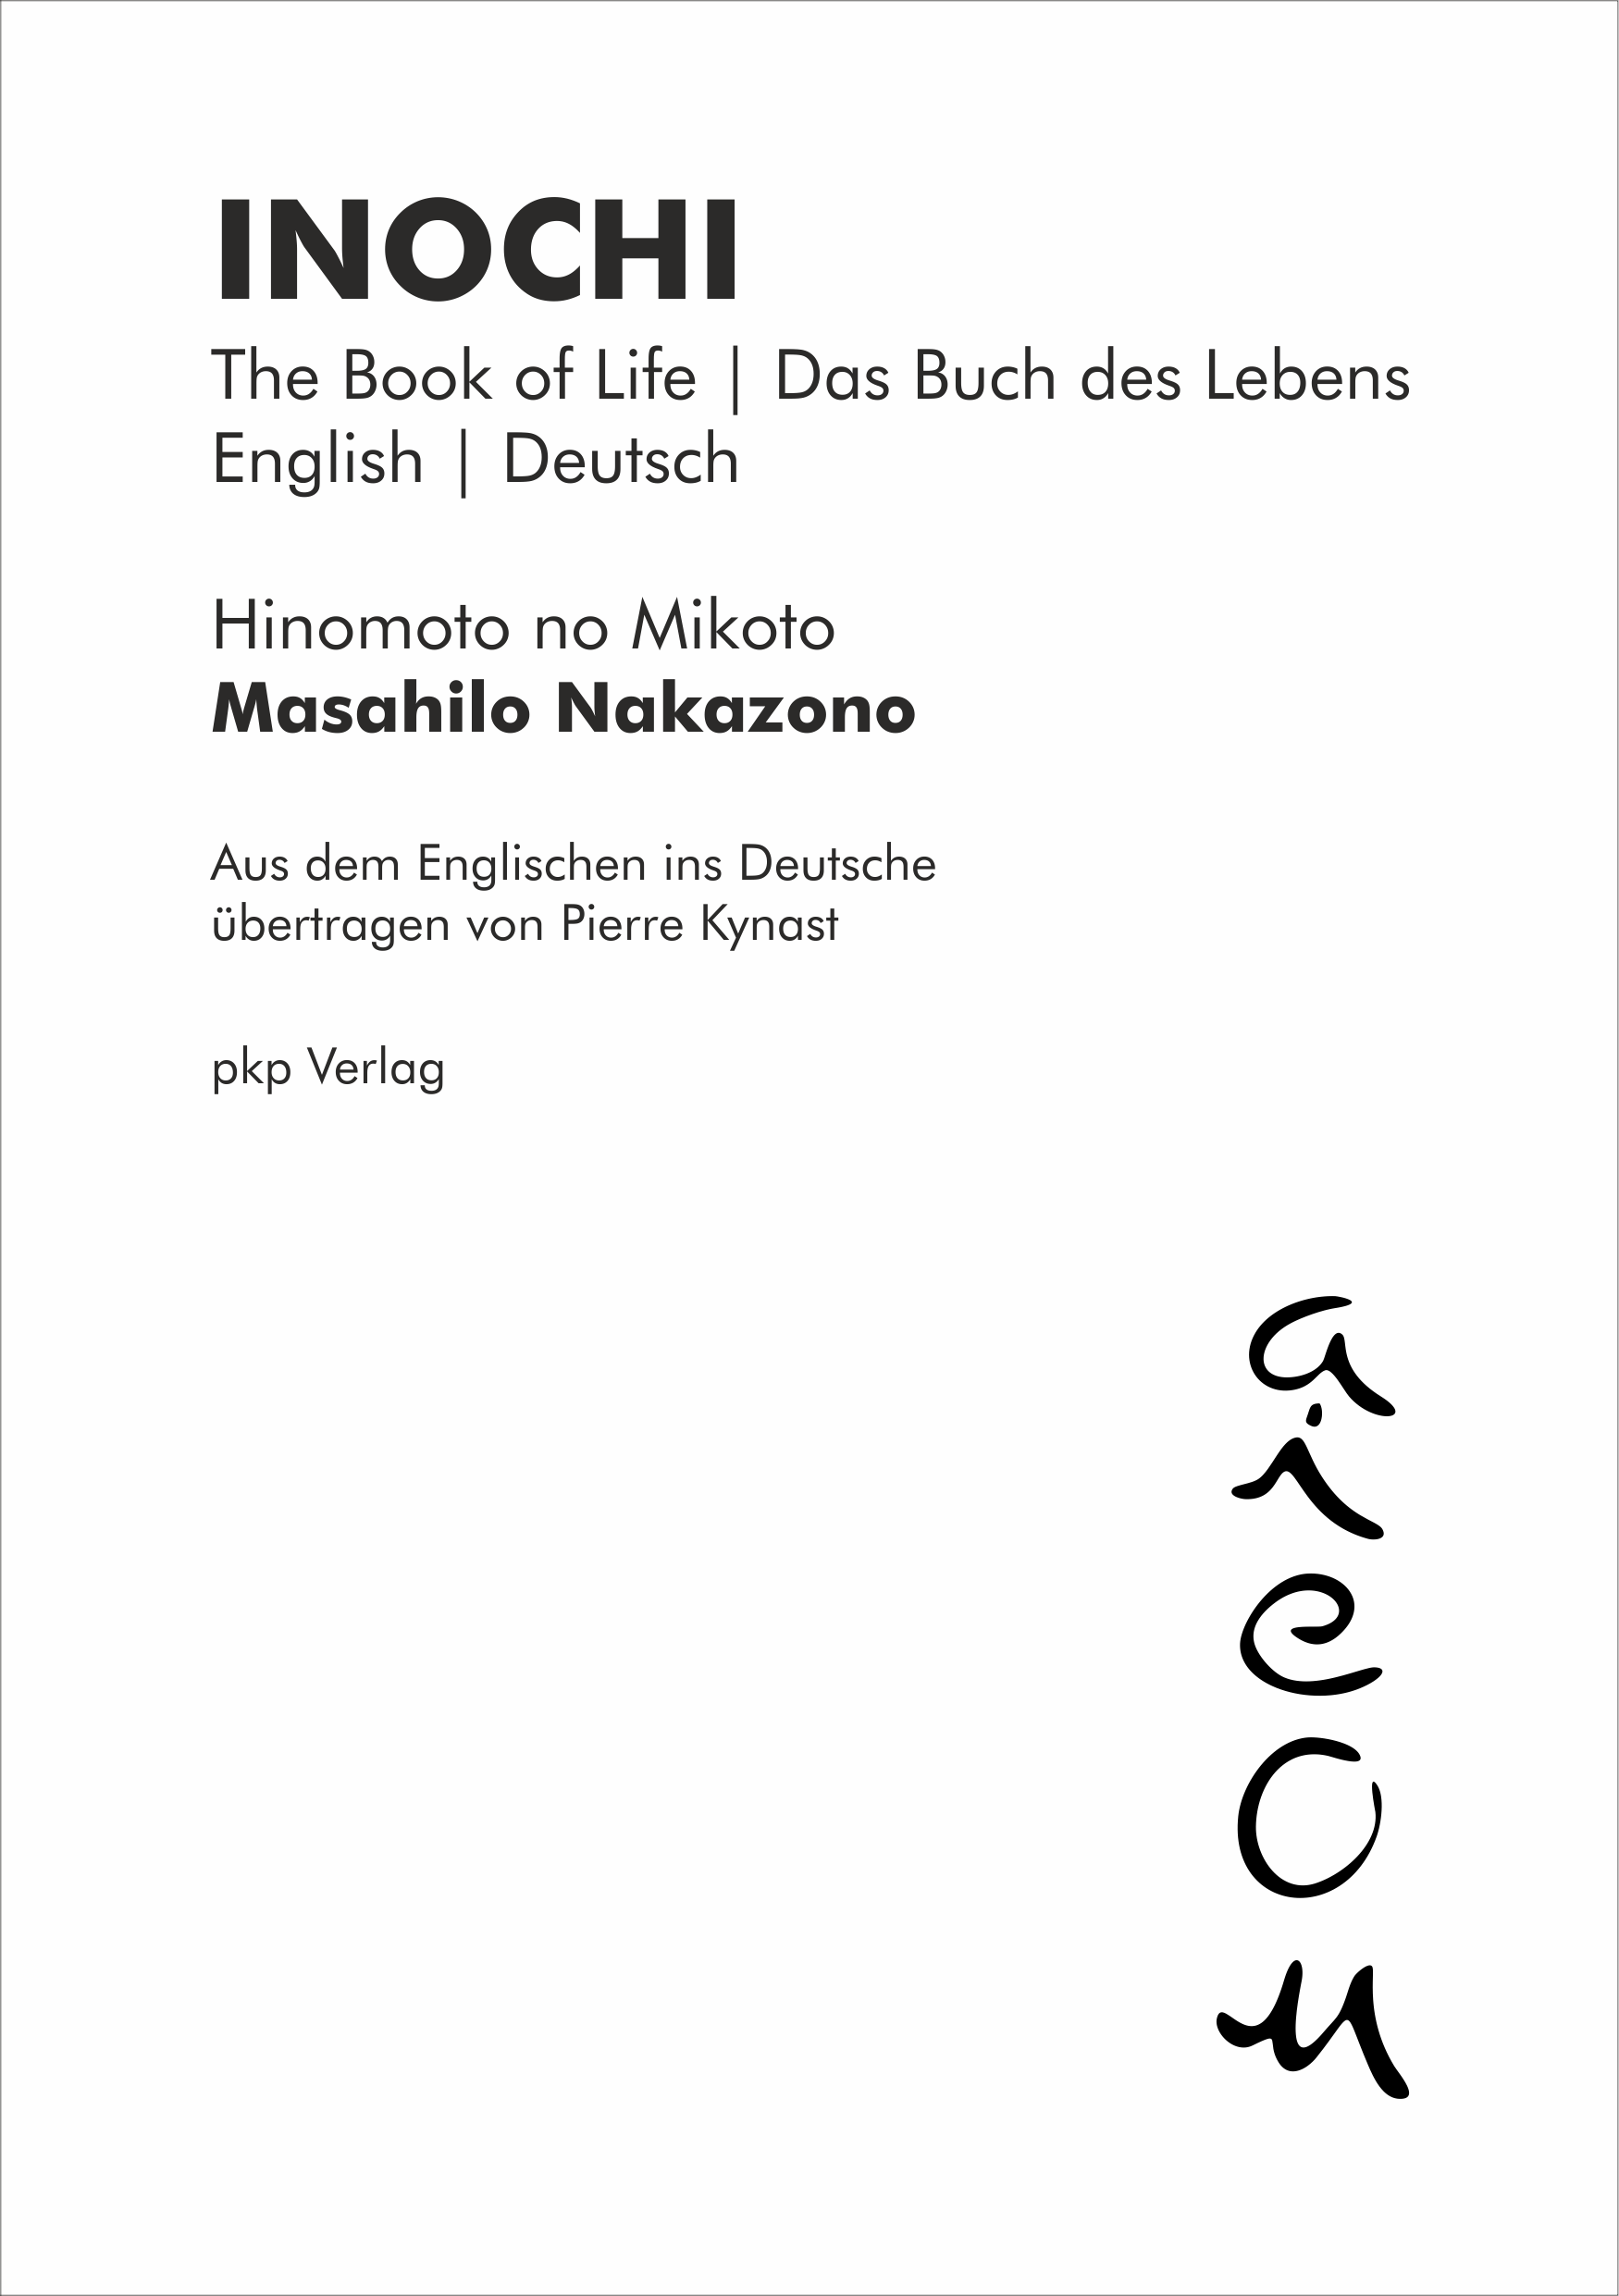 INOCHI - The Book of Life | Das Buch des Lebens (English | Deutsch) (Masahilo Nakazono, Deutsch von Pierre Kynast)